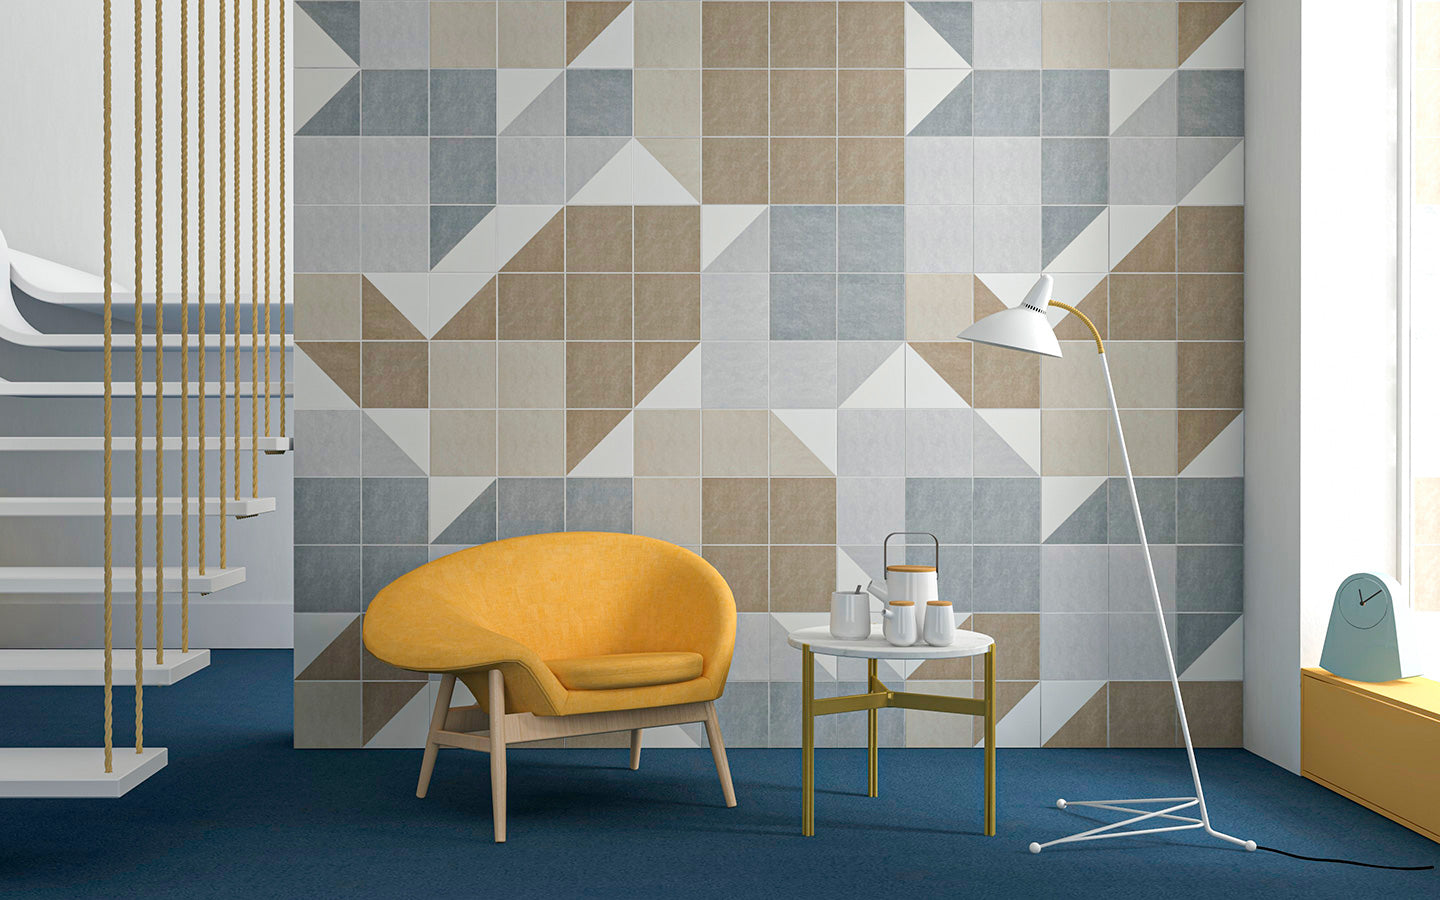 Bergen Wall Tile 20x20 | Grey Design 07 Matt